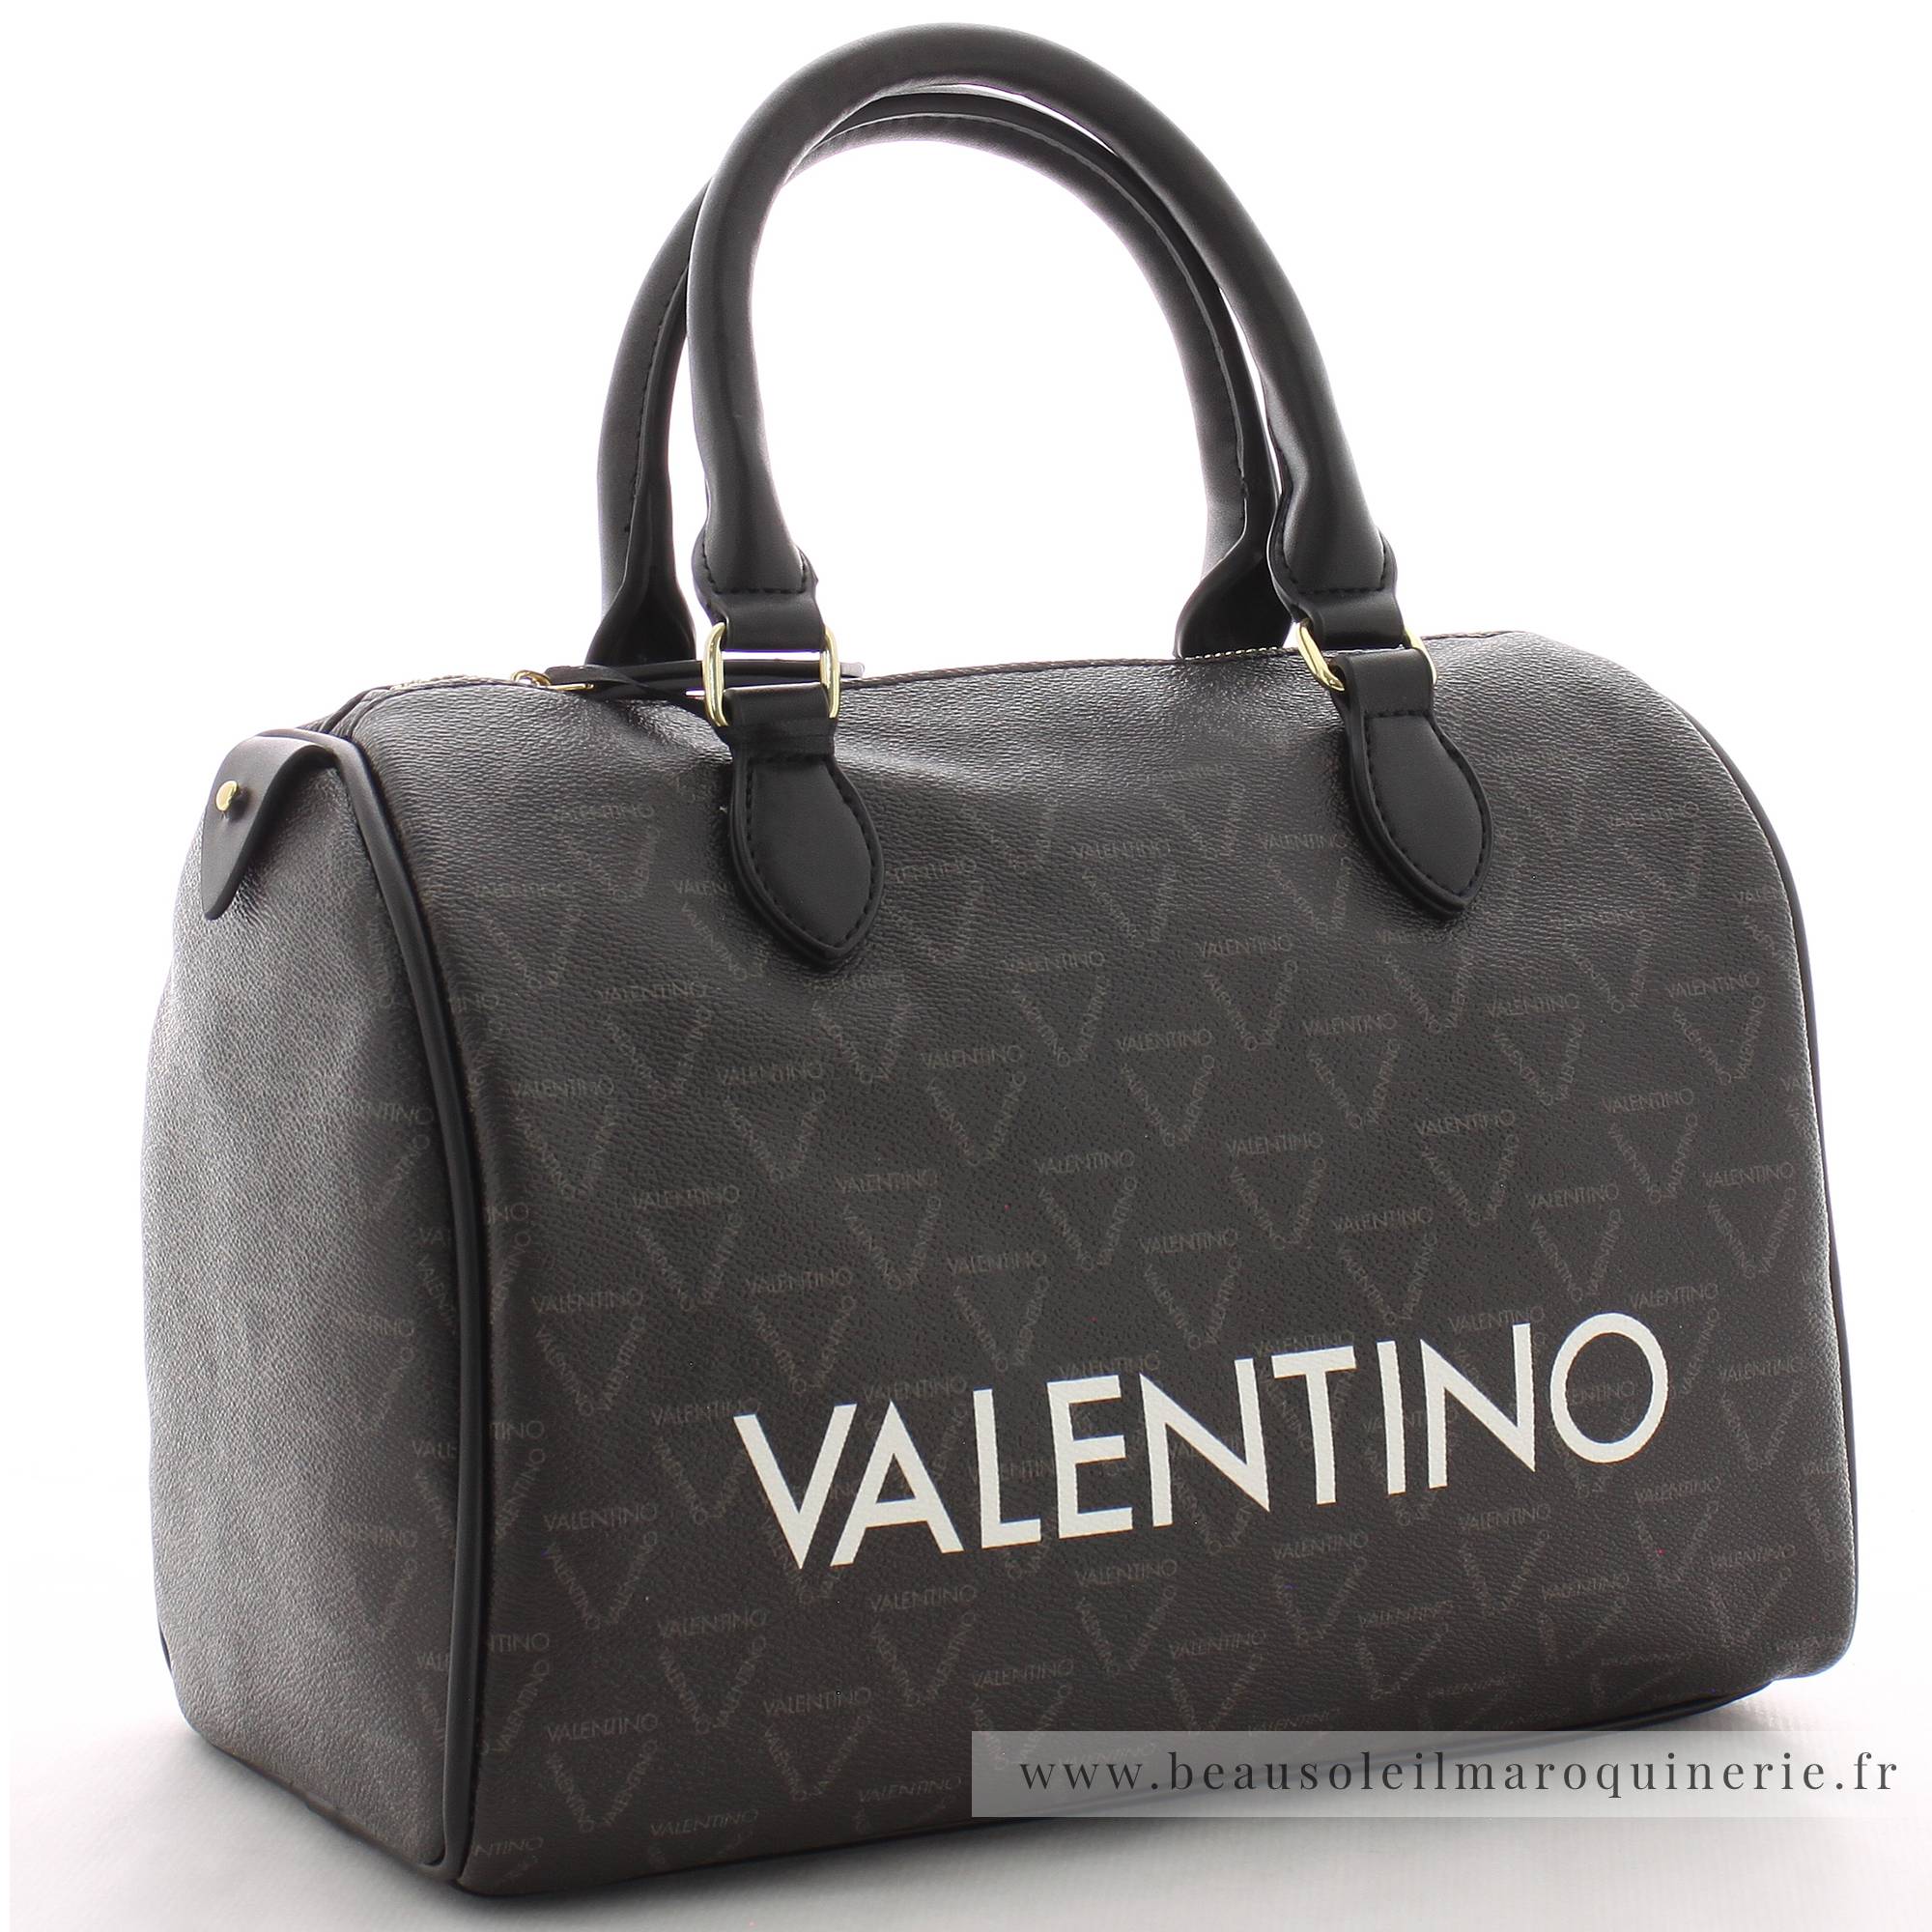 Sac porté main Valentino Liuto VBS3KG28 395 couleur noir vue de profil